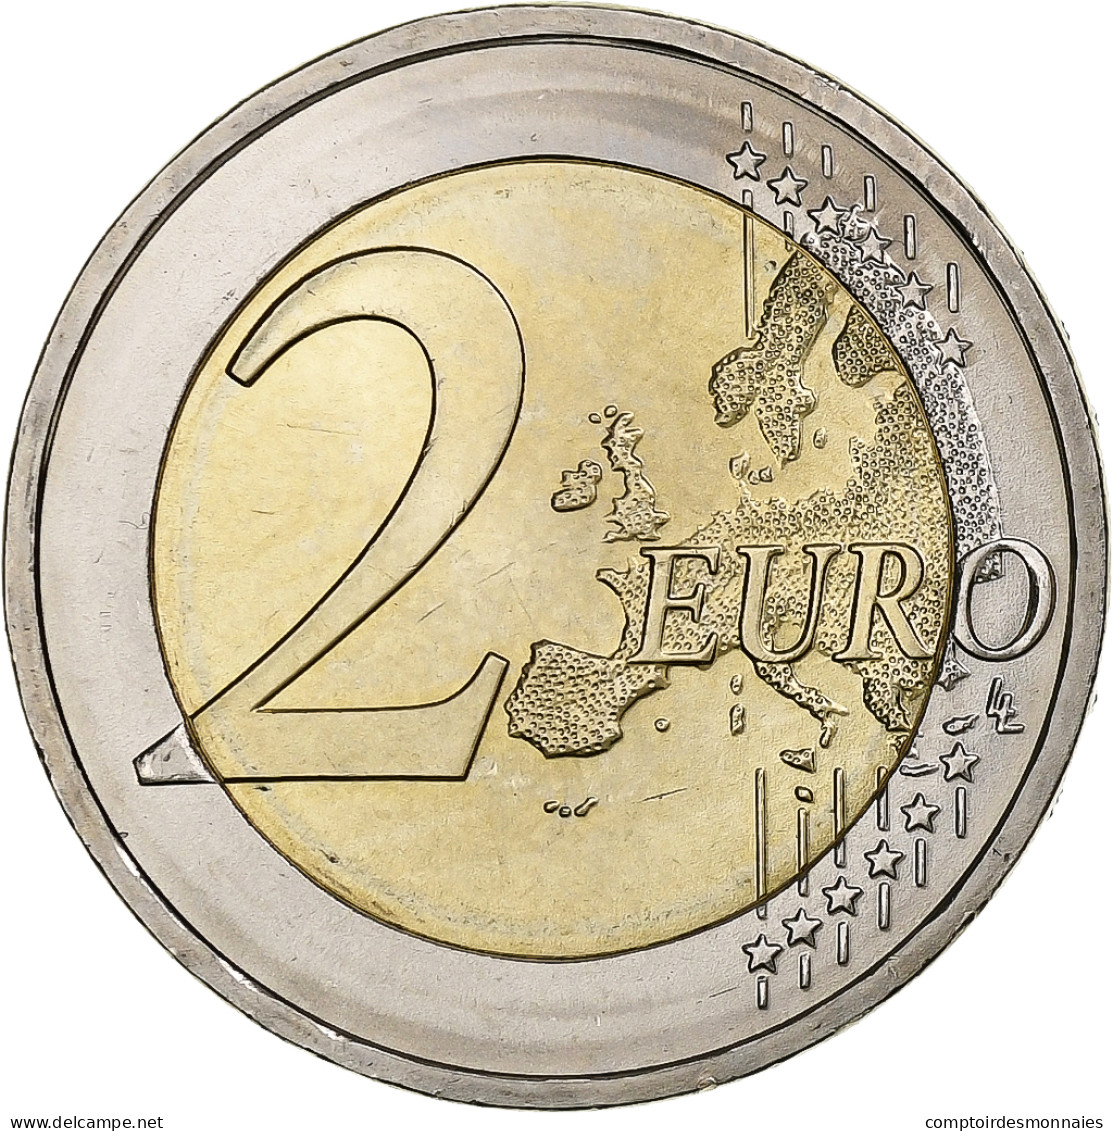 République Fédérale Allemande, 2 Euro, 2018, Hambourg, Bimétallique, SPL - Duitsland